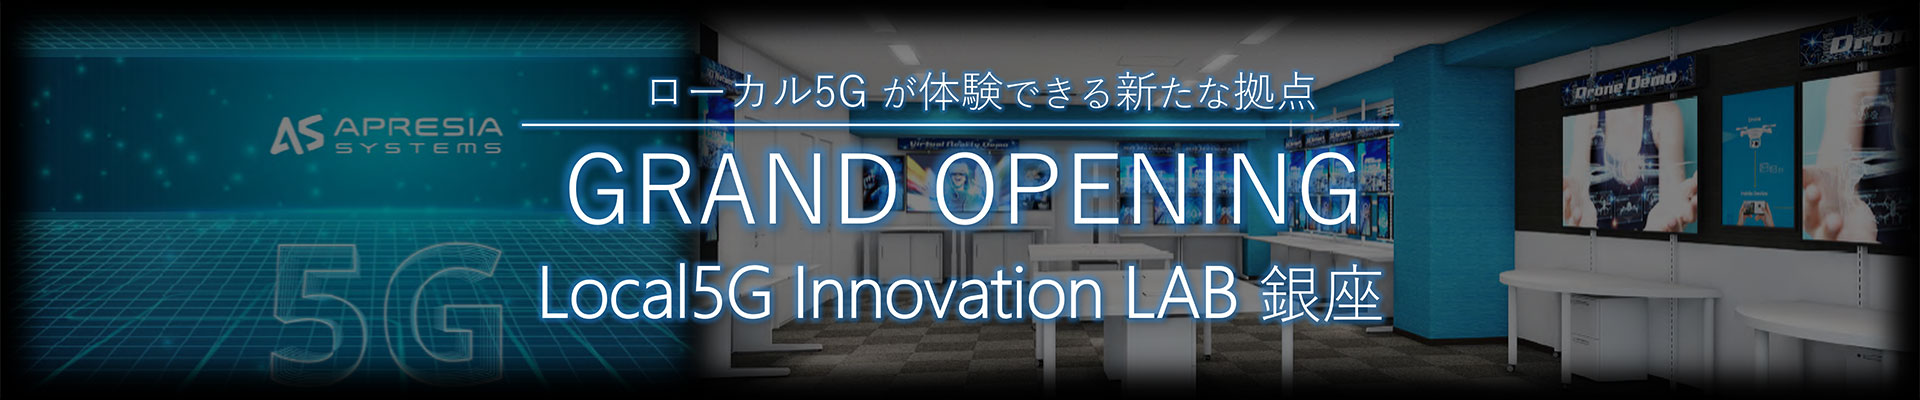 ローカル5G が体験できる新たな拠点 NEW OPEN Local5G Innovation LAB 銀座